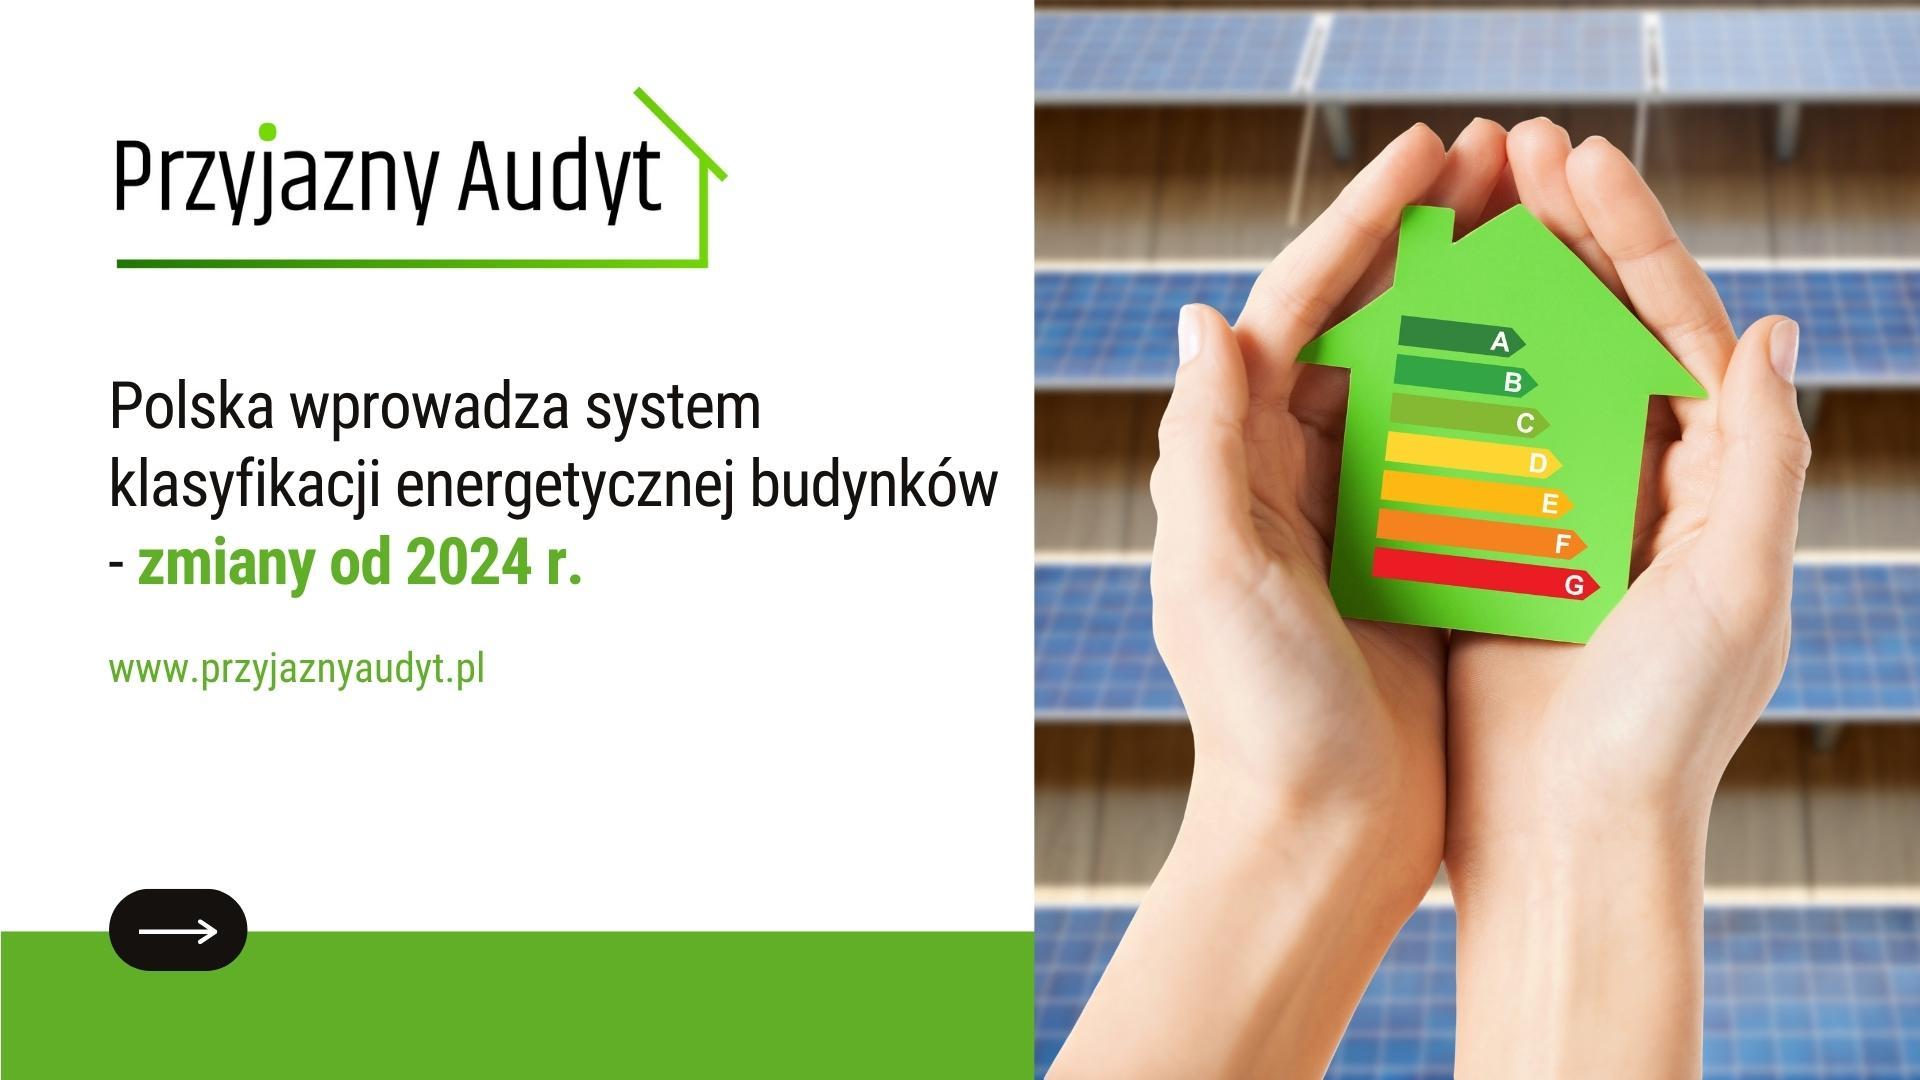 Polska wprowadza system klasyfikacji energetycznej budynków -zmiany od 2024 r.